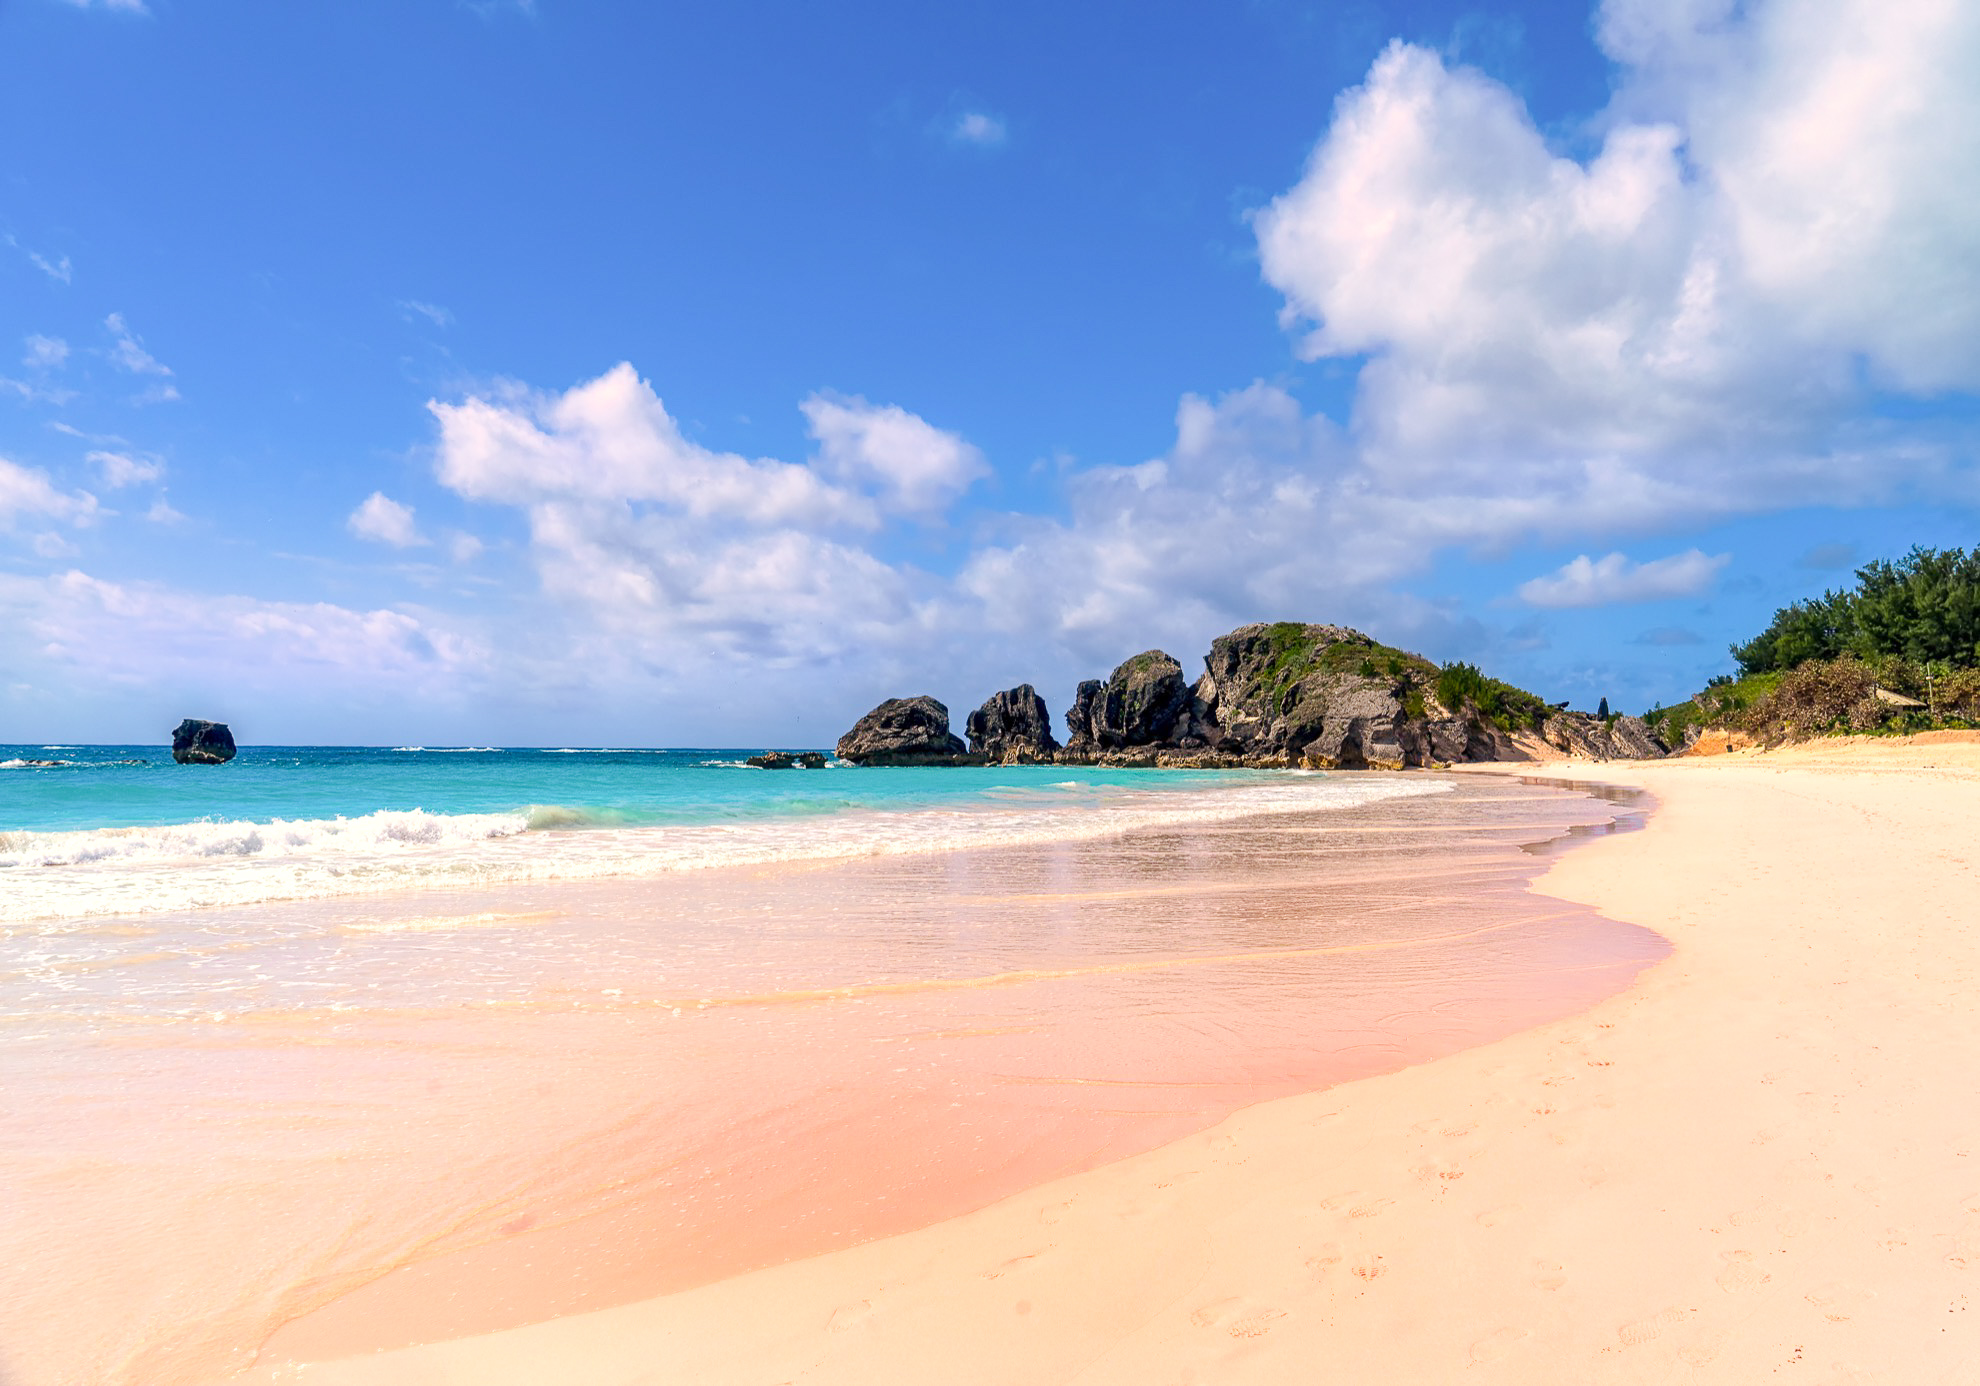 11 playas de arena coloridas que debes ver para creer - 11